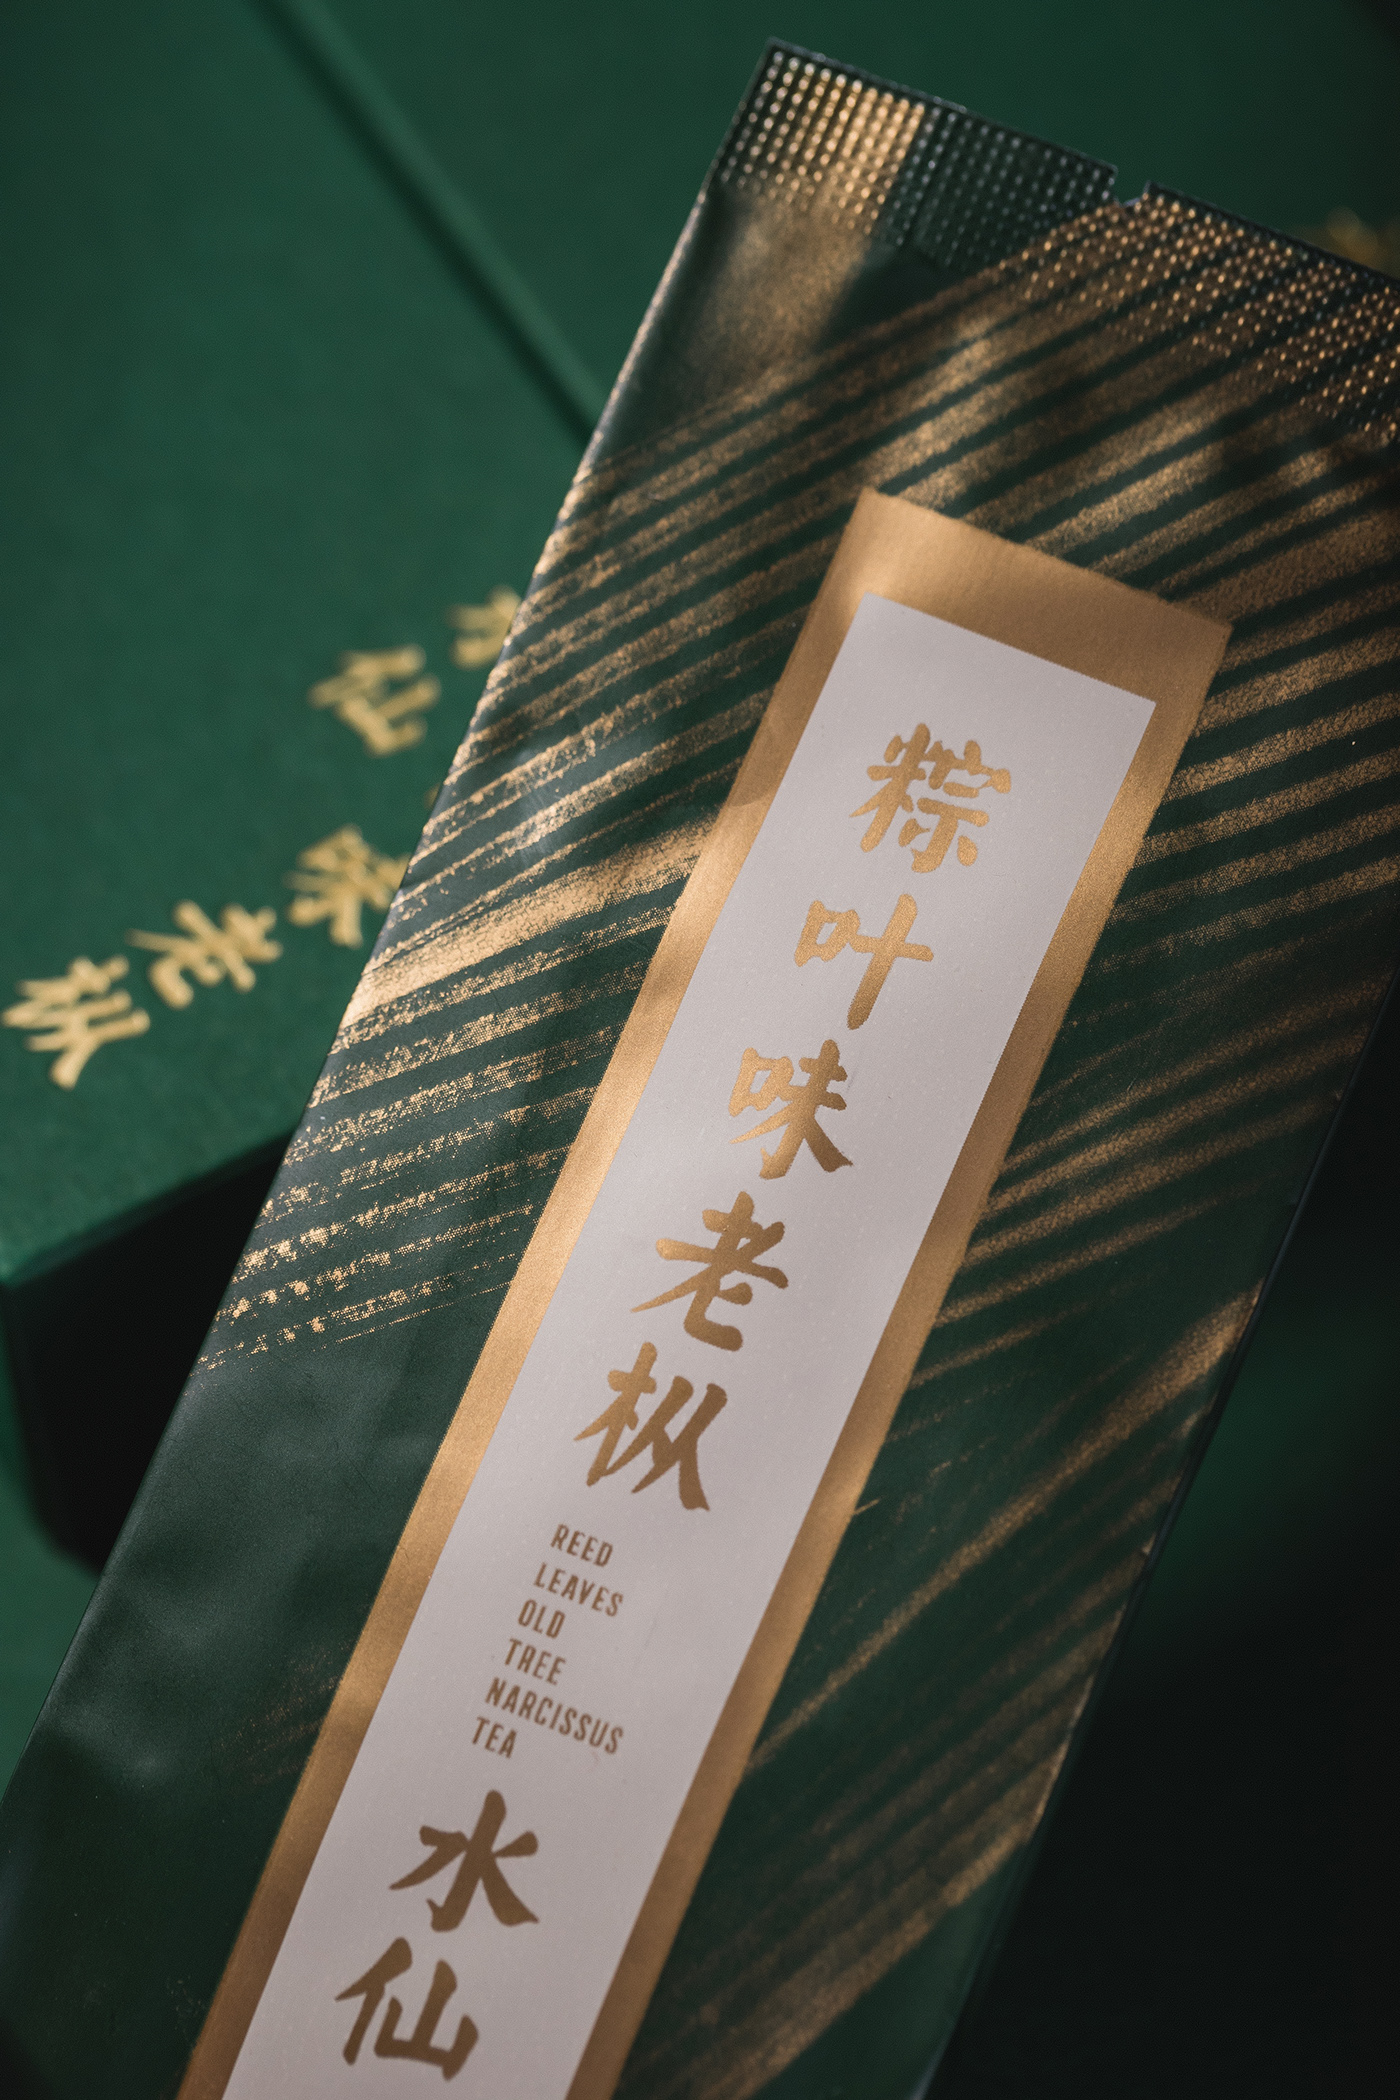 乌龙茶 老枞 水仙 岩茶 茶包装 中国 传统 东方 纹理 武夷